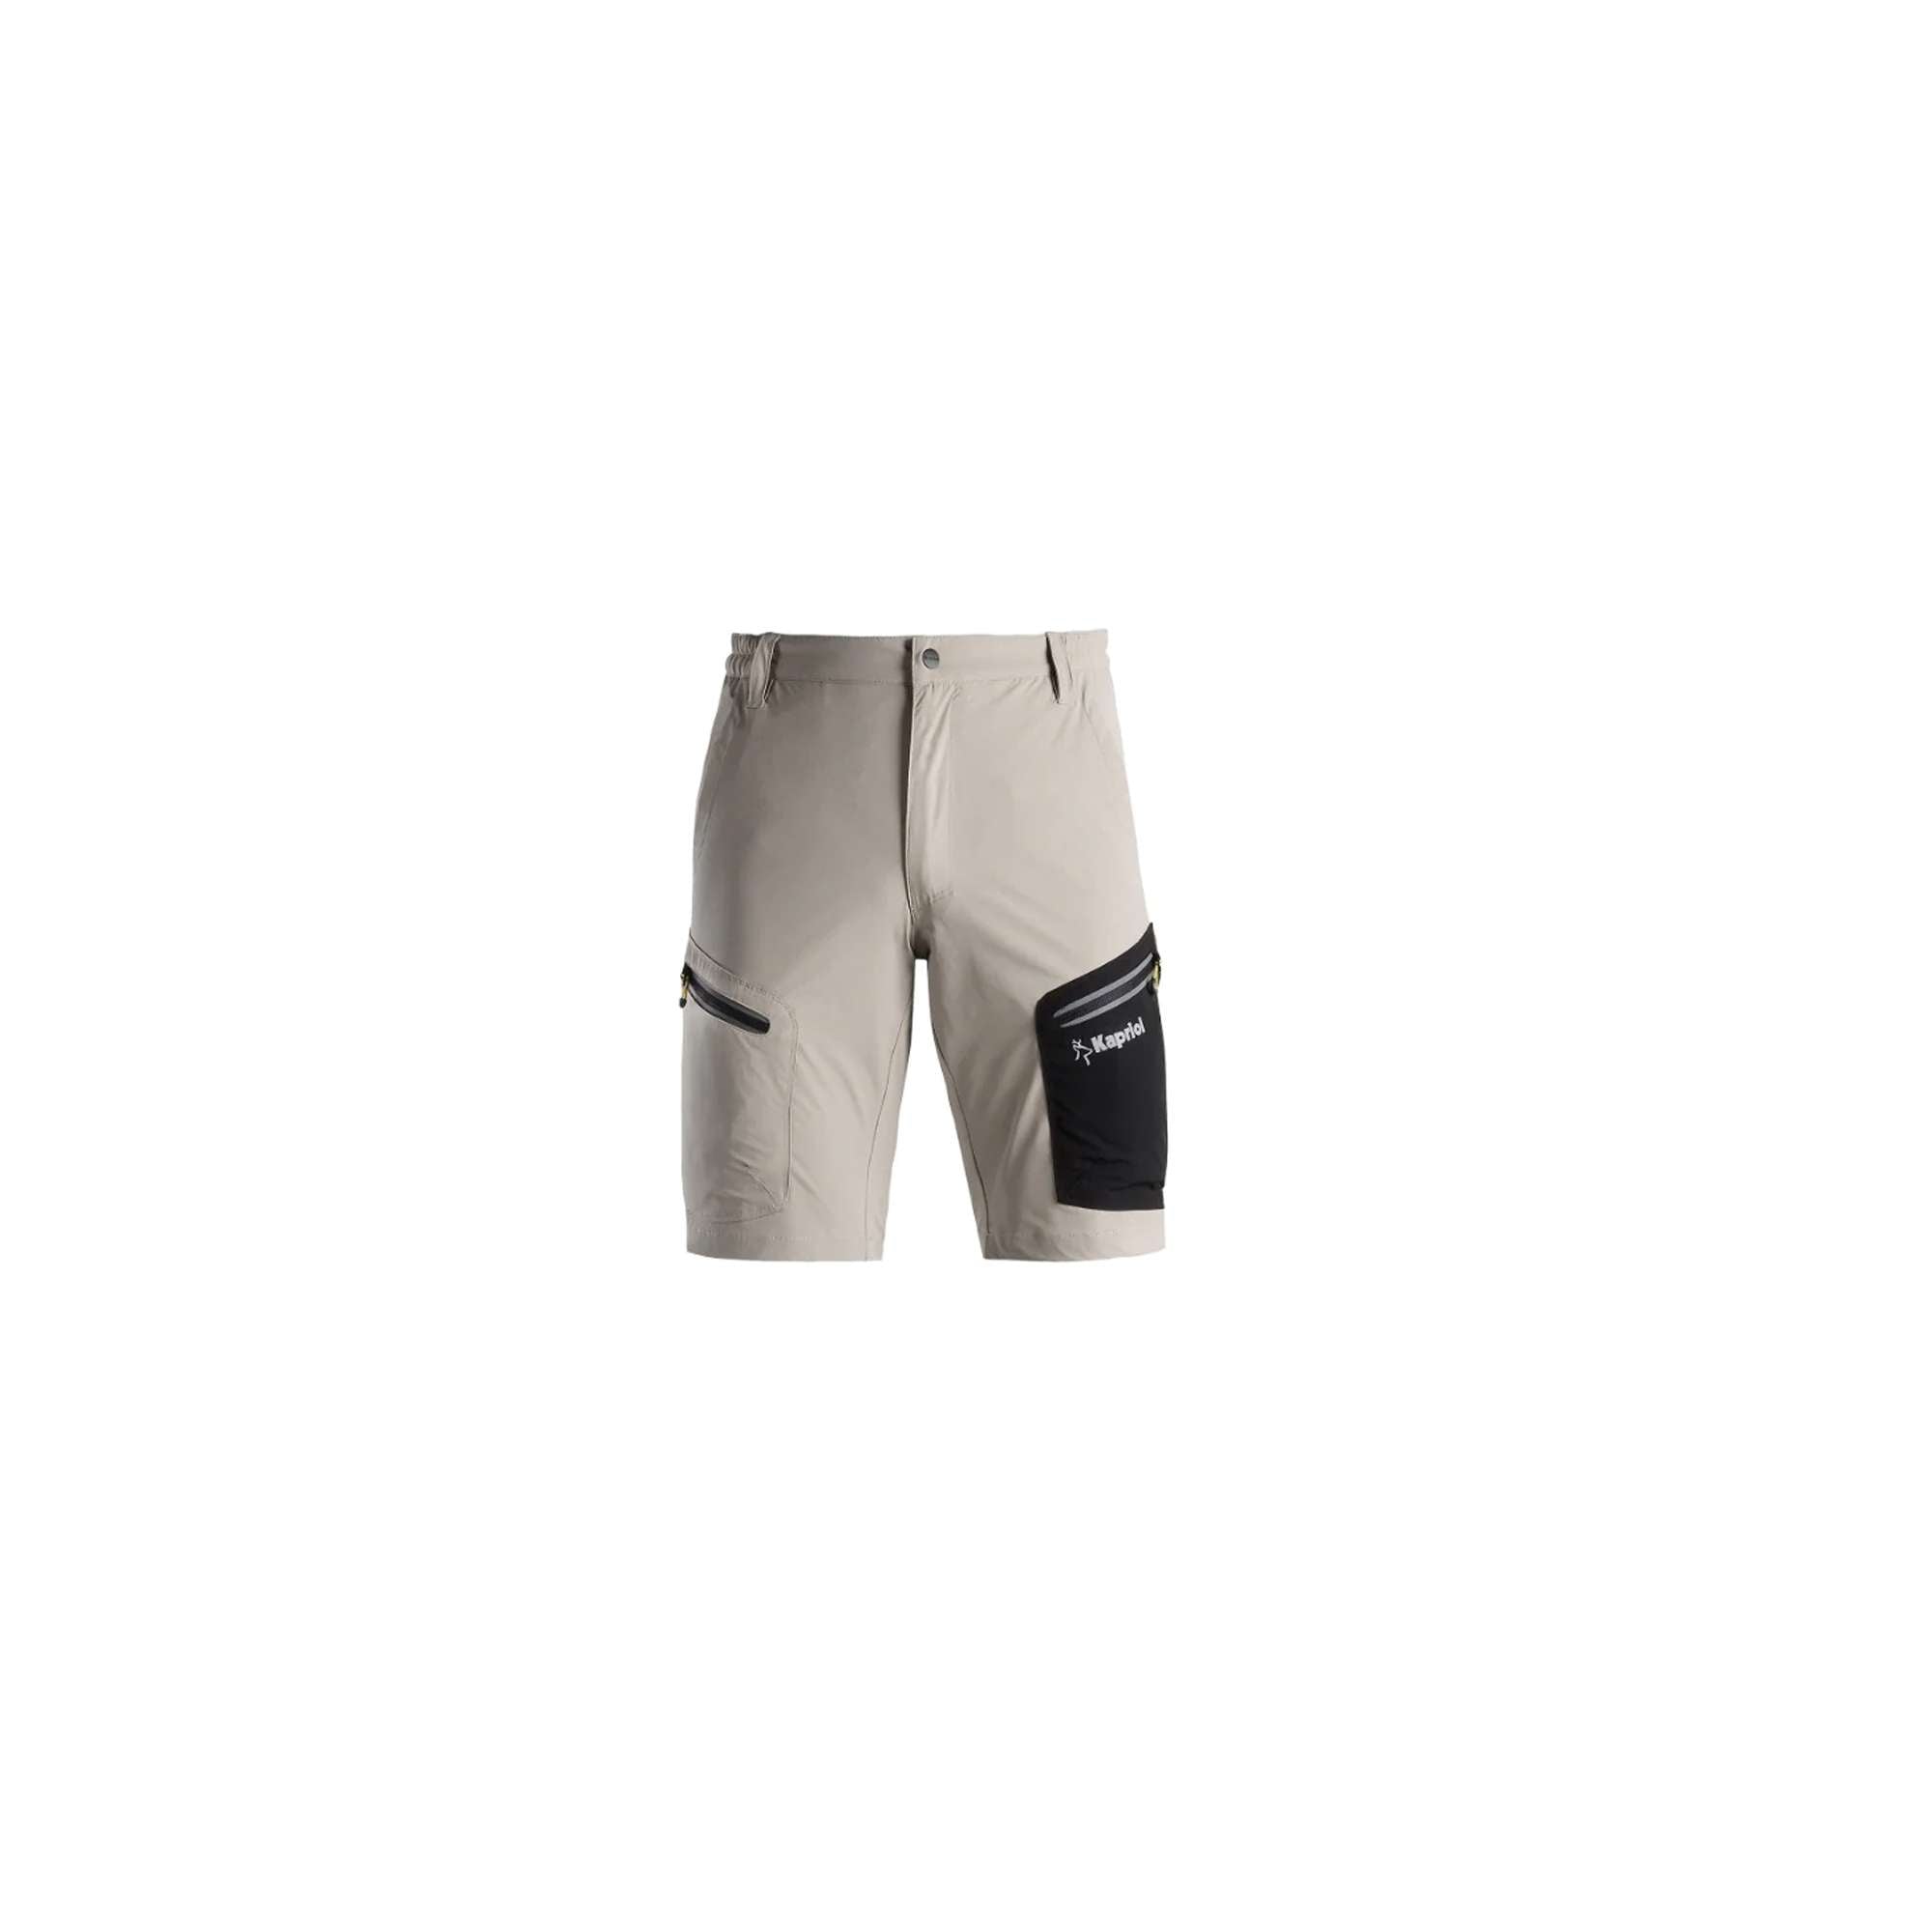 Pantalone corto TECH beige TG. (M/XL) - 35170/2 Kapriol